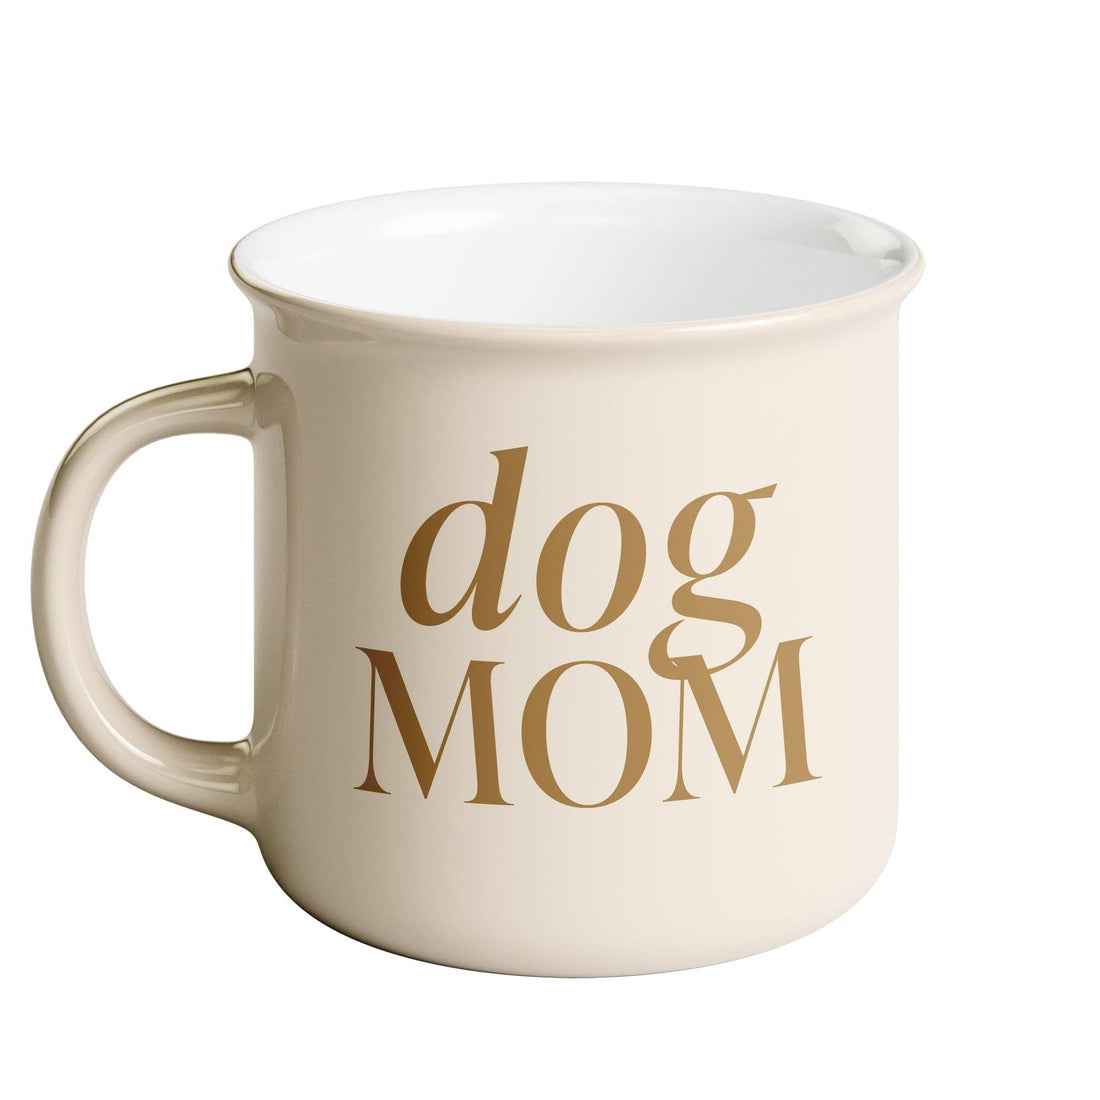 *NEW* Dog Mom 11 oz Campfire Coffee Mug - Home Decor